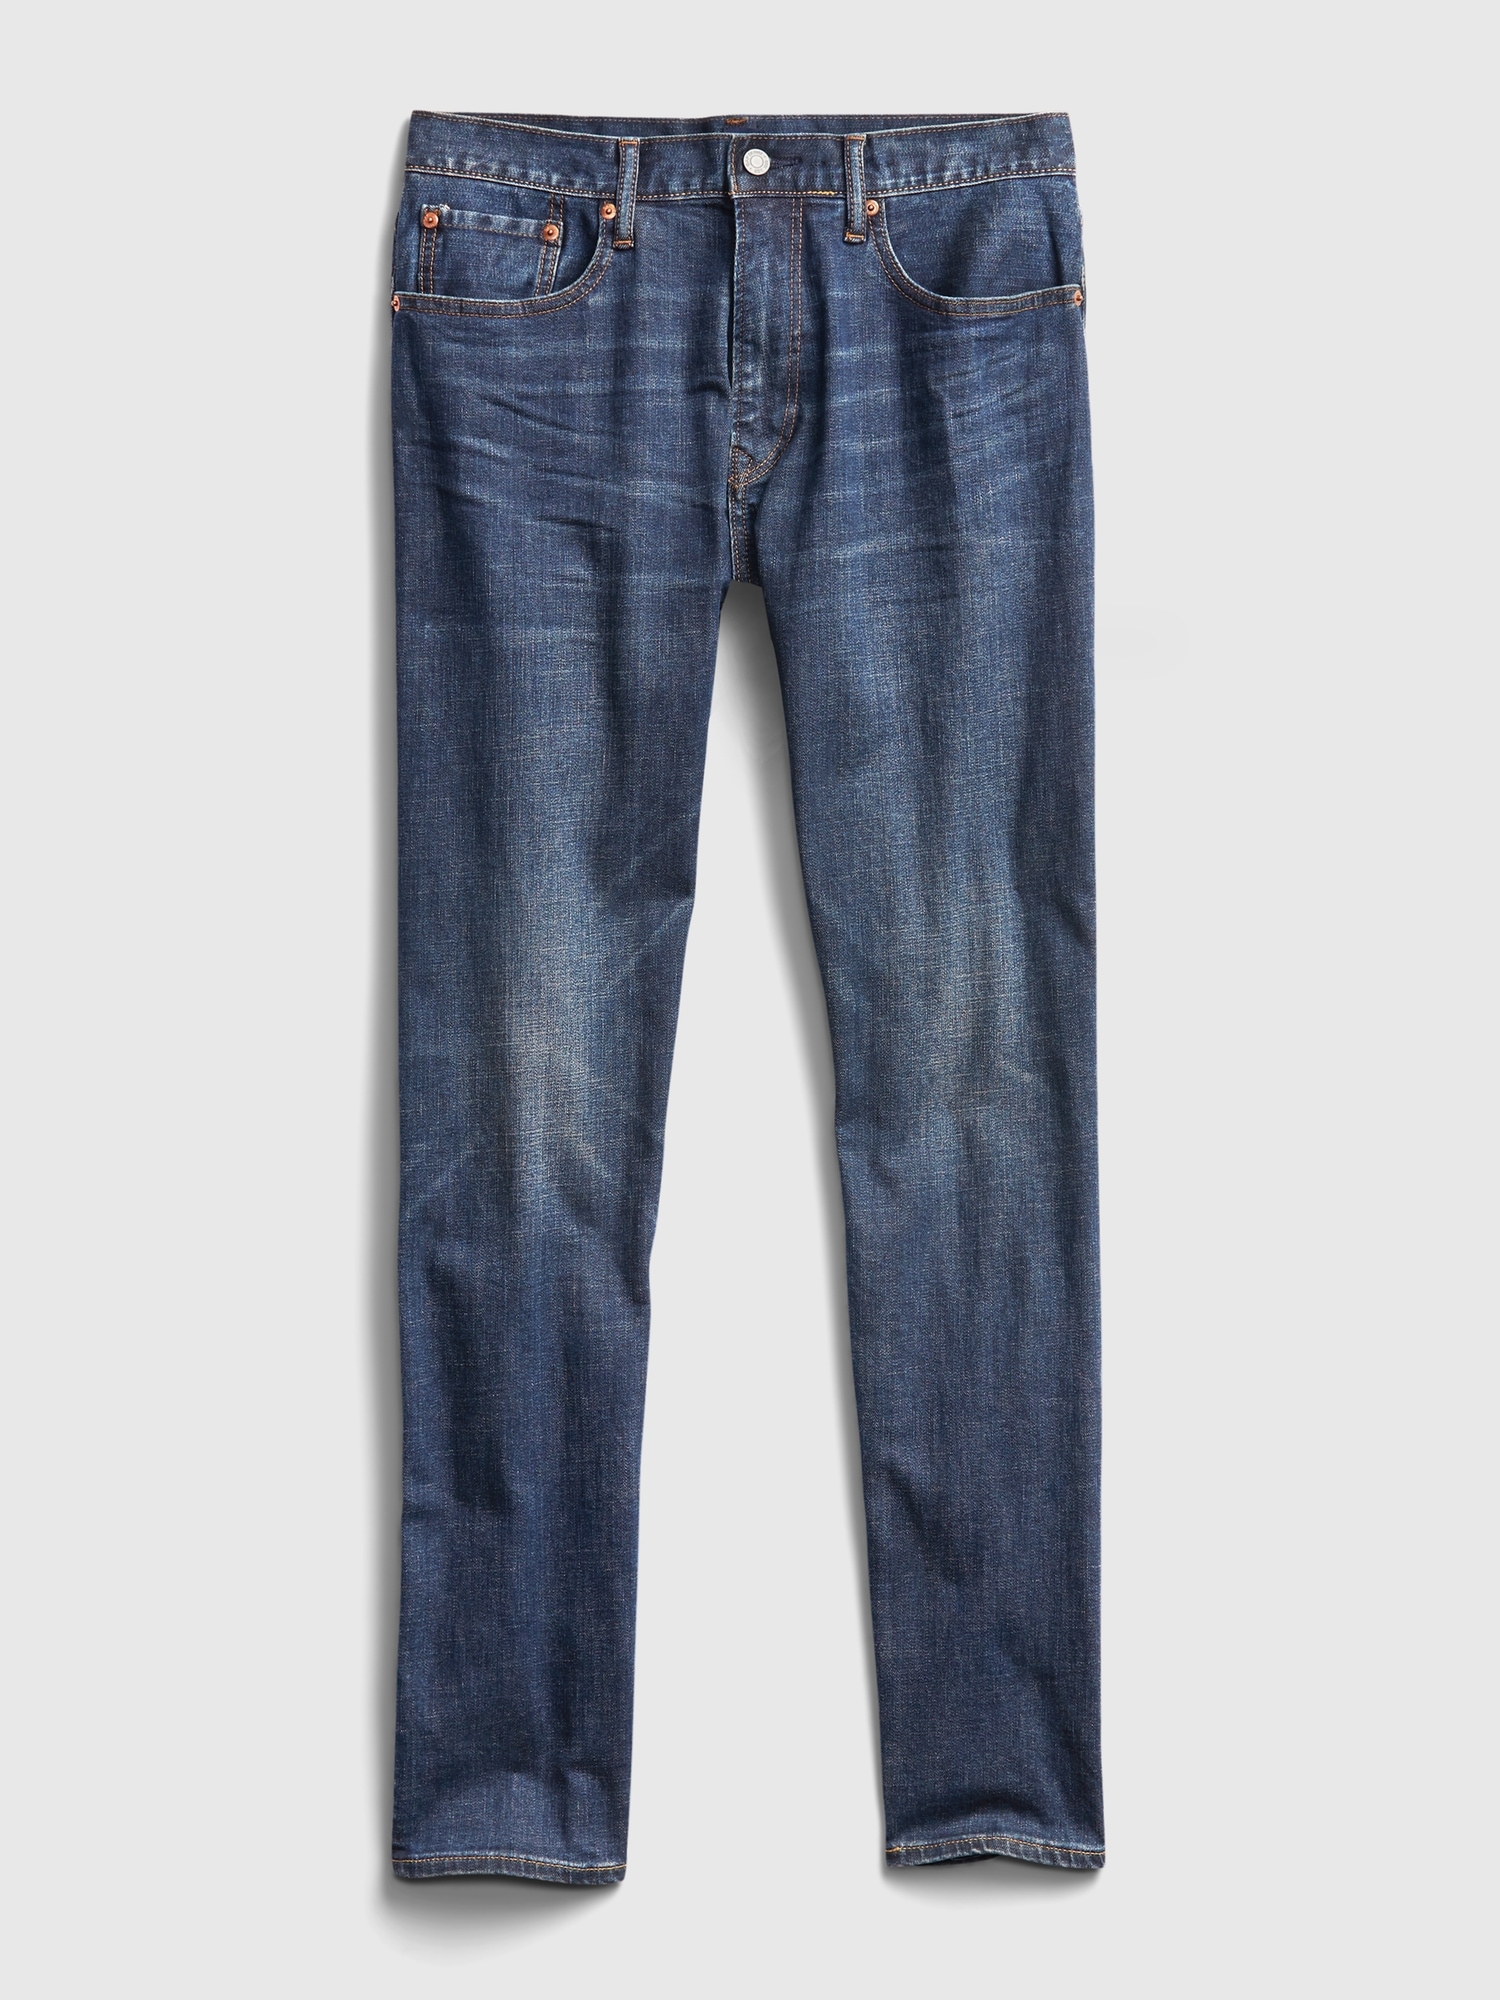 GAP Men's Slim Taper Fit Denim Jeans, Indigo Rinse Bryn, 34W x 34L